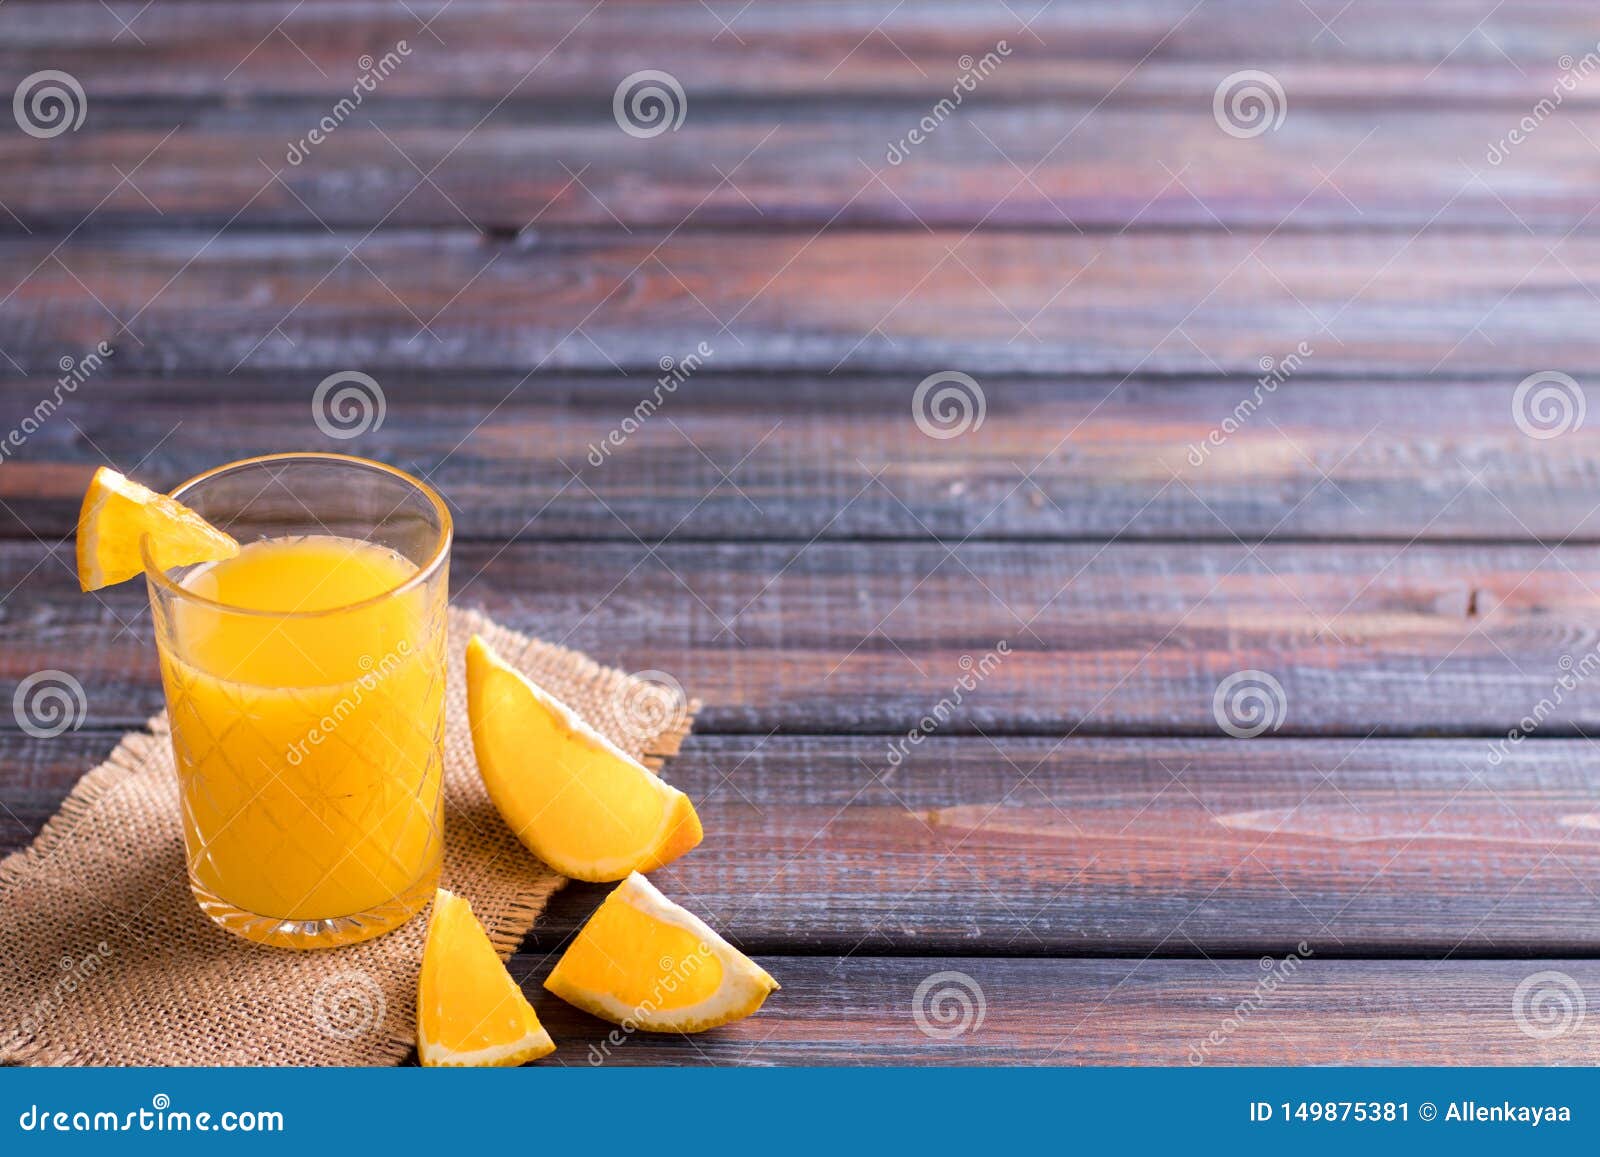 Frischer Orangensaft Auf Dem Tisch, Rustikale Art Stockbild - Bild von ...